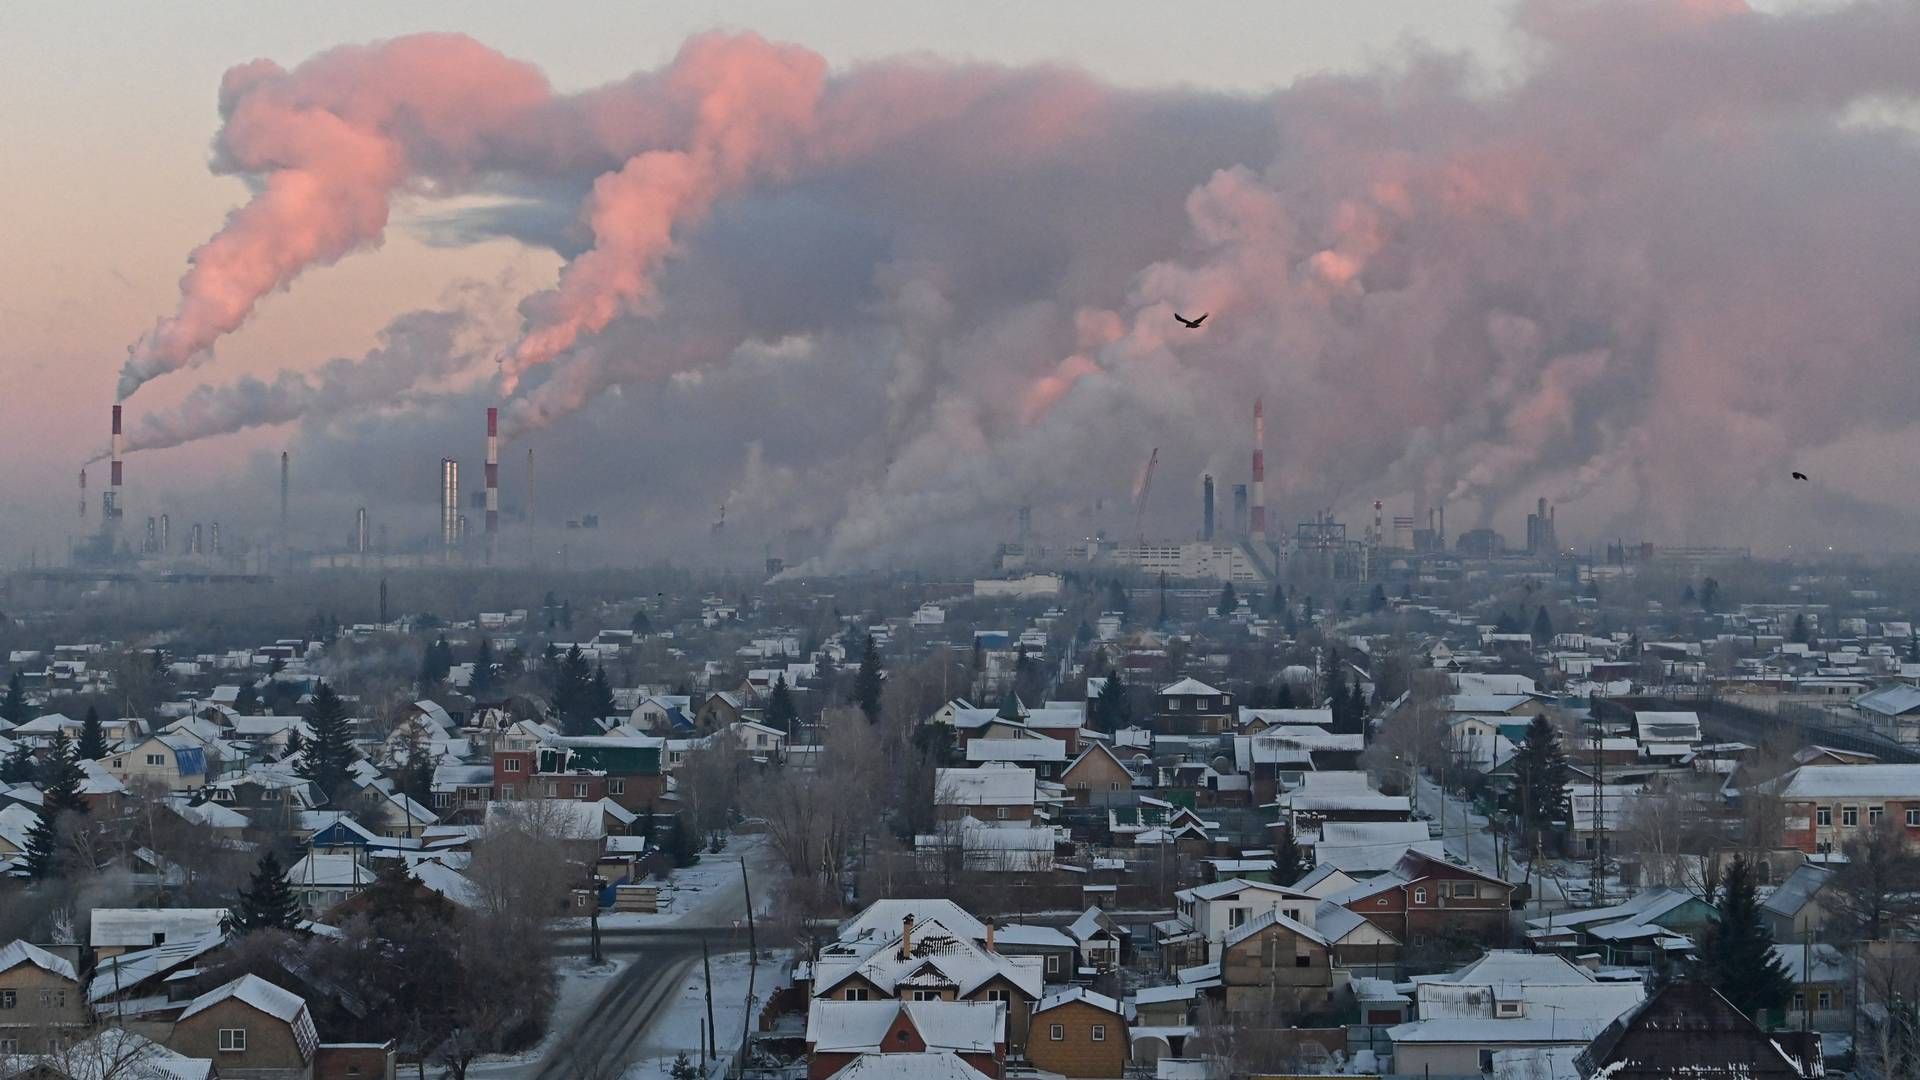 Eksport er olie er den største indtægtskilde i Rusland, som invaderede nabolandet Ukraine i februar 2022. Billedet viser energiselskabet Gazproms raffinaderi i Omsk i Rusland. Selskabet er ejet af den russiske stat. | Foto: Alexey Malgavko/Reuters/Ritzau Scanpix